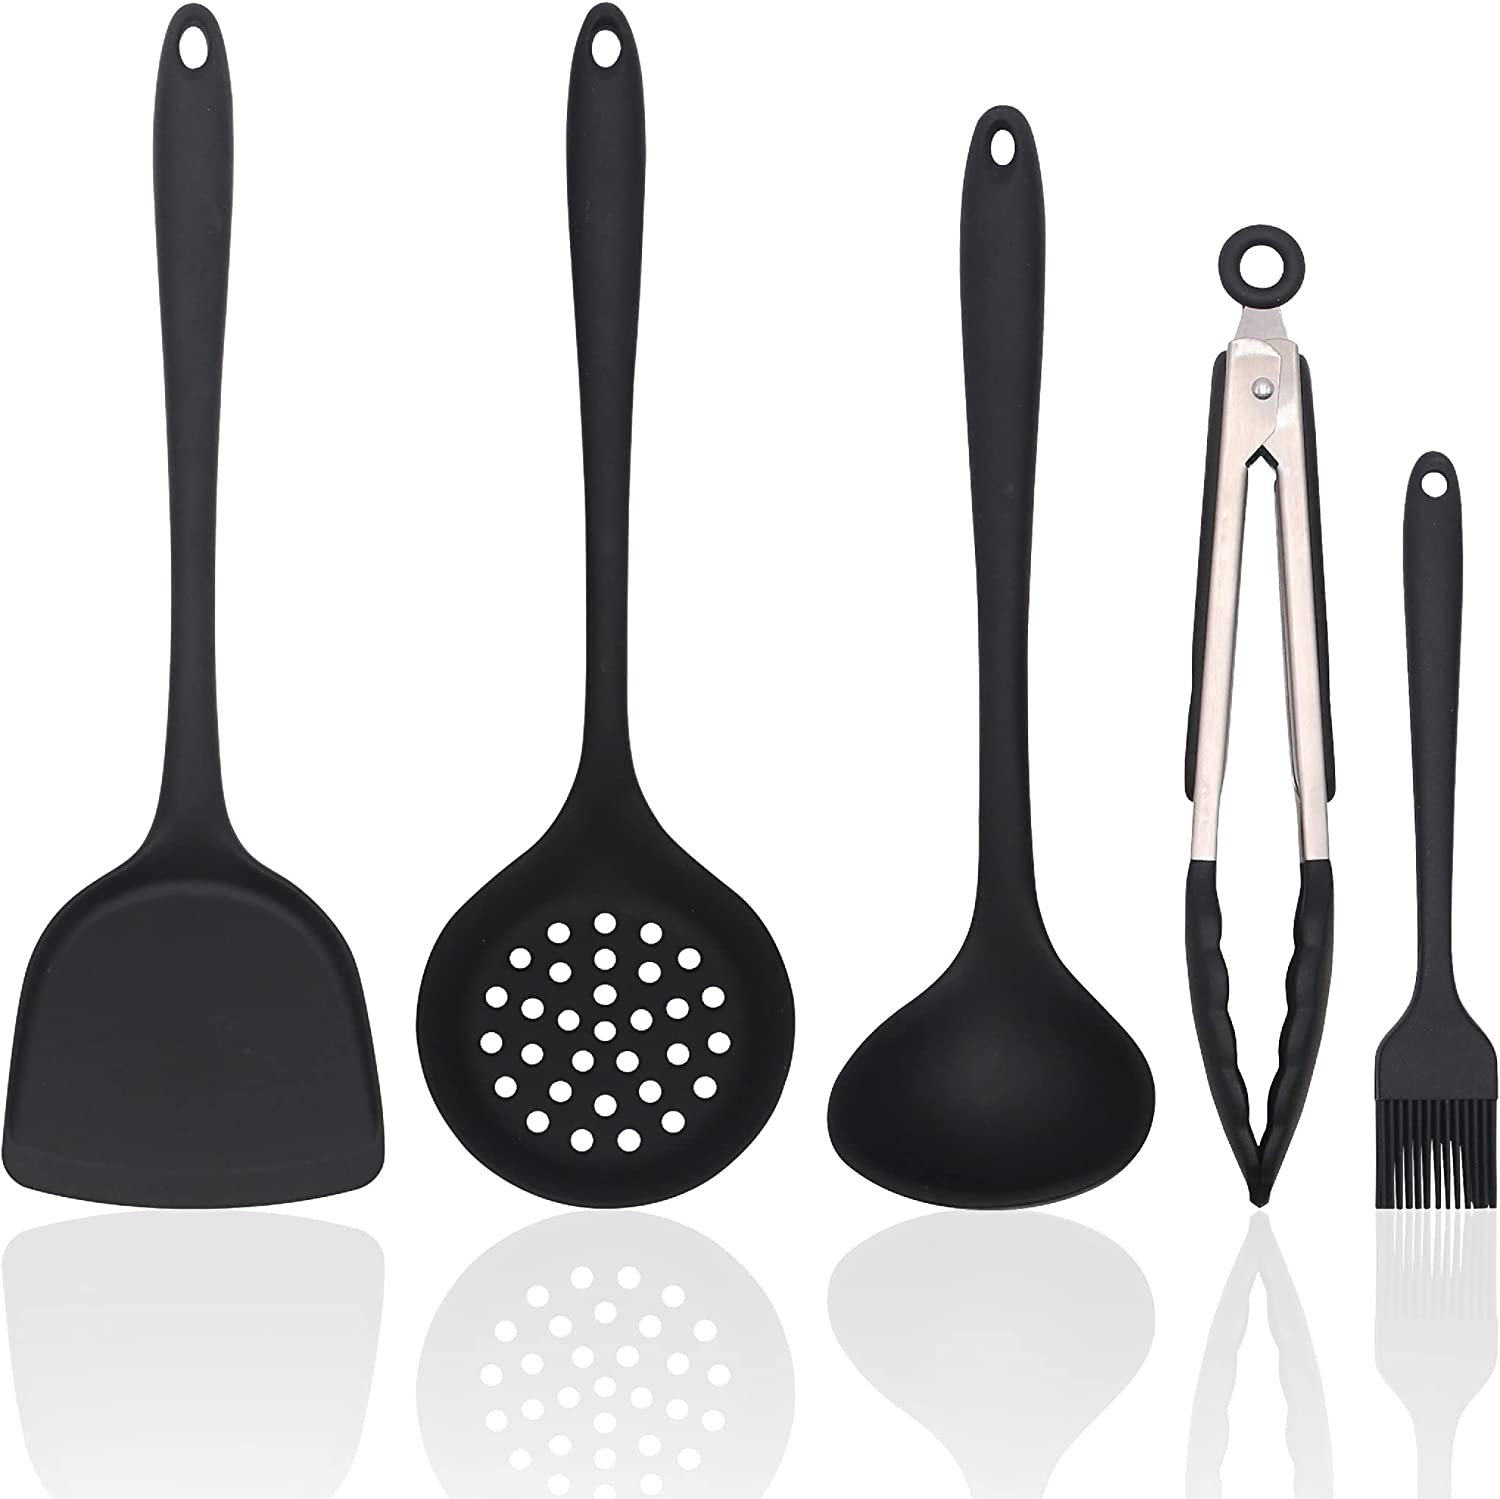 https://assets.wfcdn.com/im/49843949/compr-r85/2216/221645779/5-piece-silicone-assorted-kitchen-utensil-set.jpg